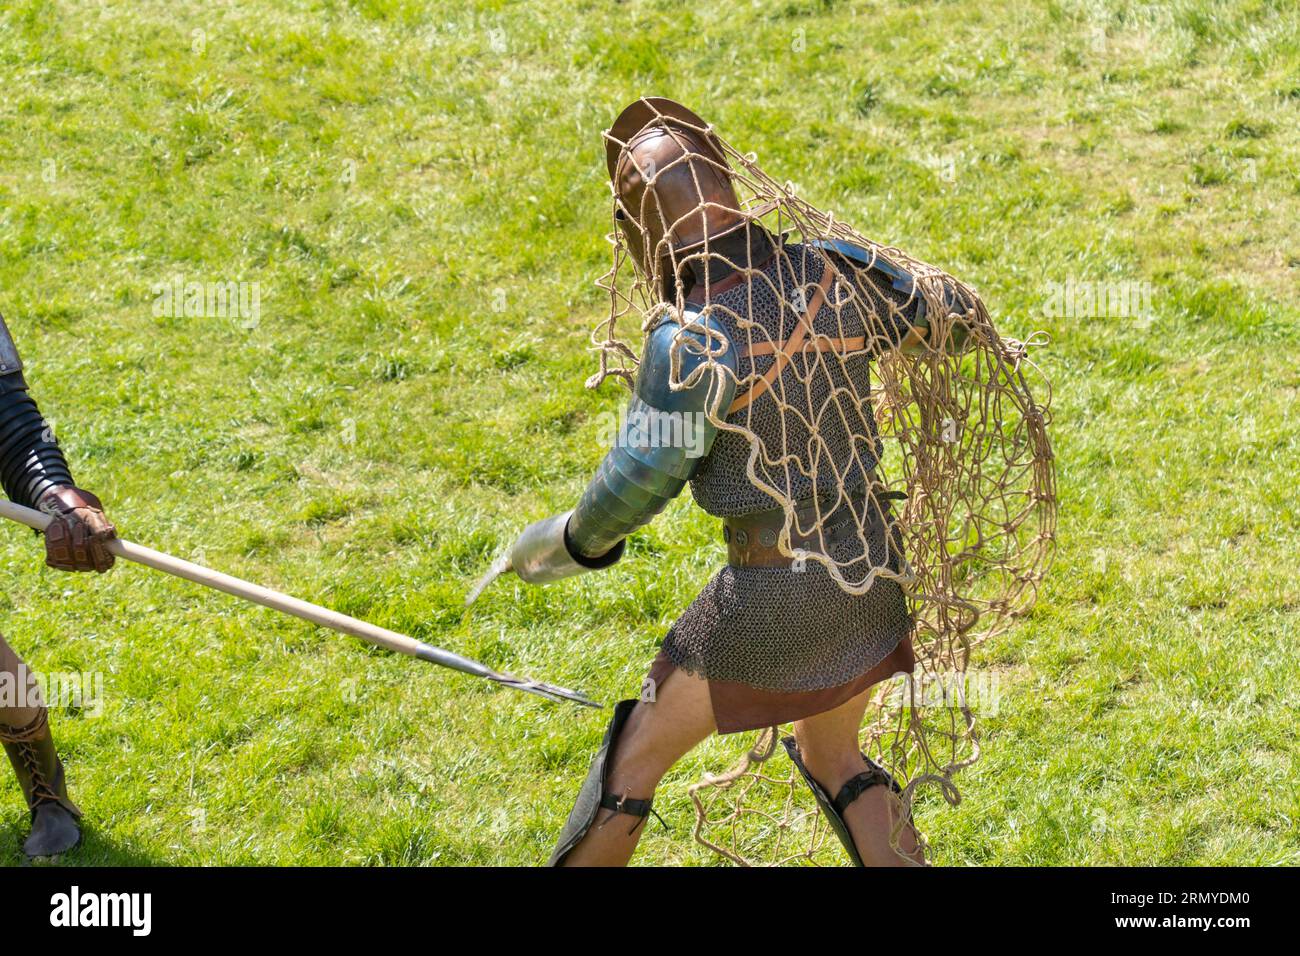 Ein römischer Gladiator, der sich in ein Netz verstrickt hat, kämpft auf einem grünen Grasfeld Stockfoto